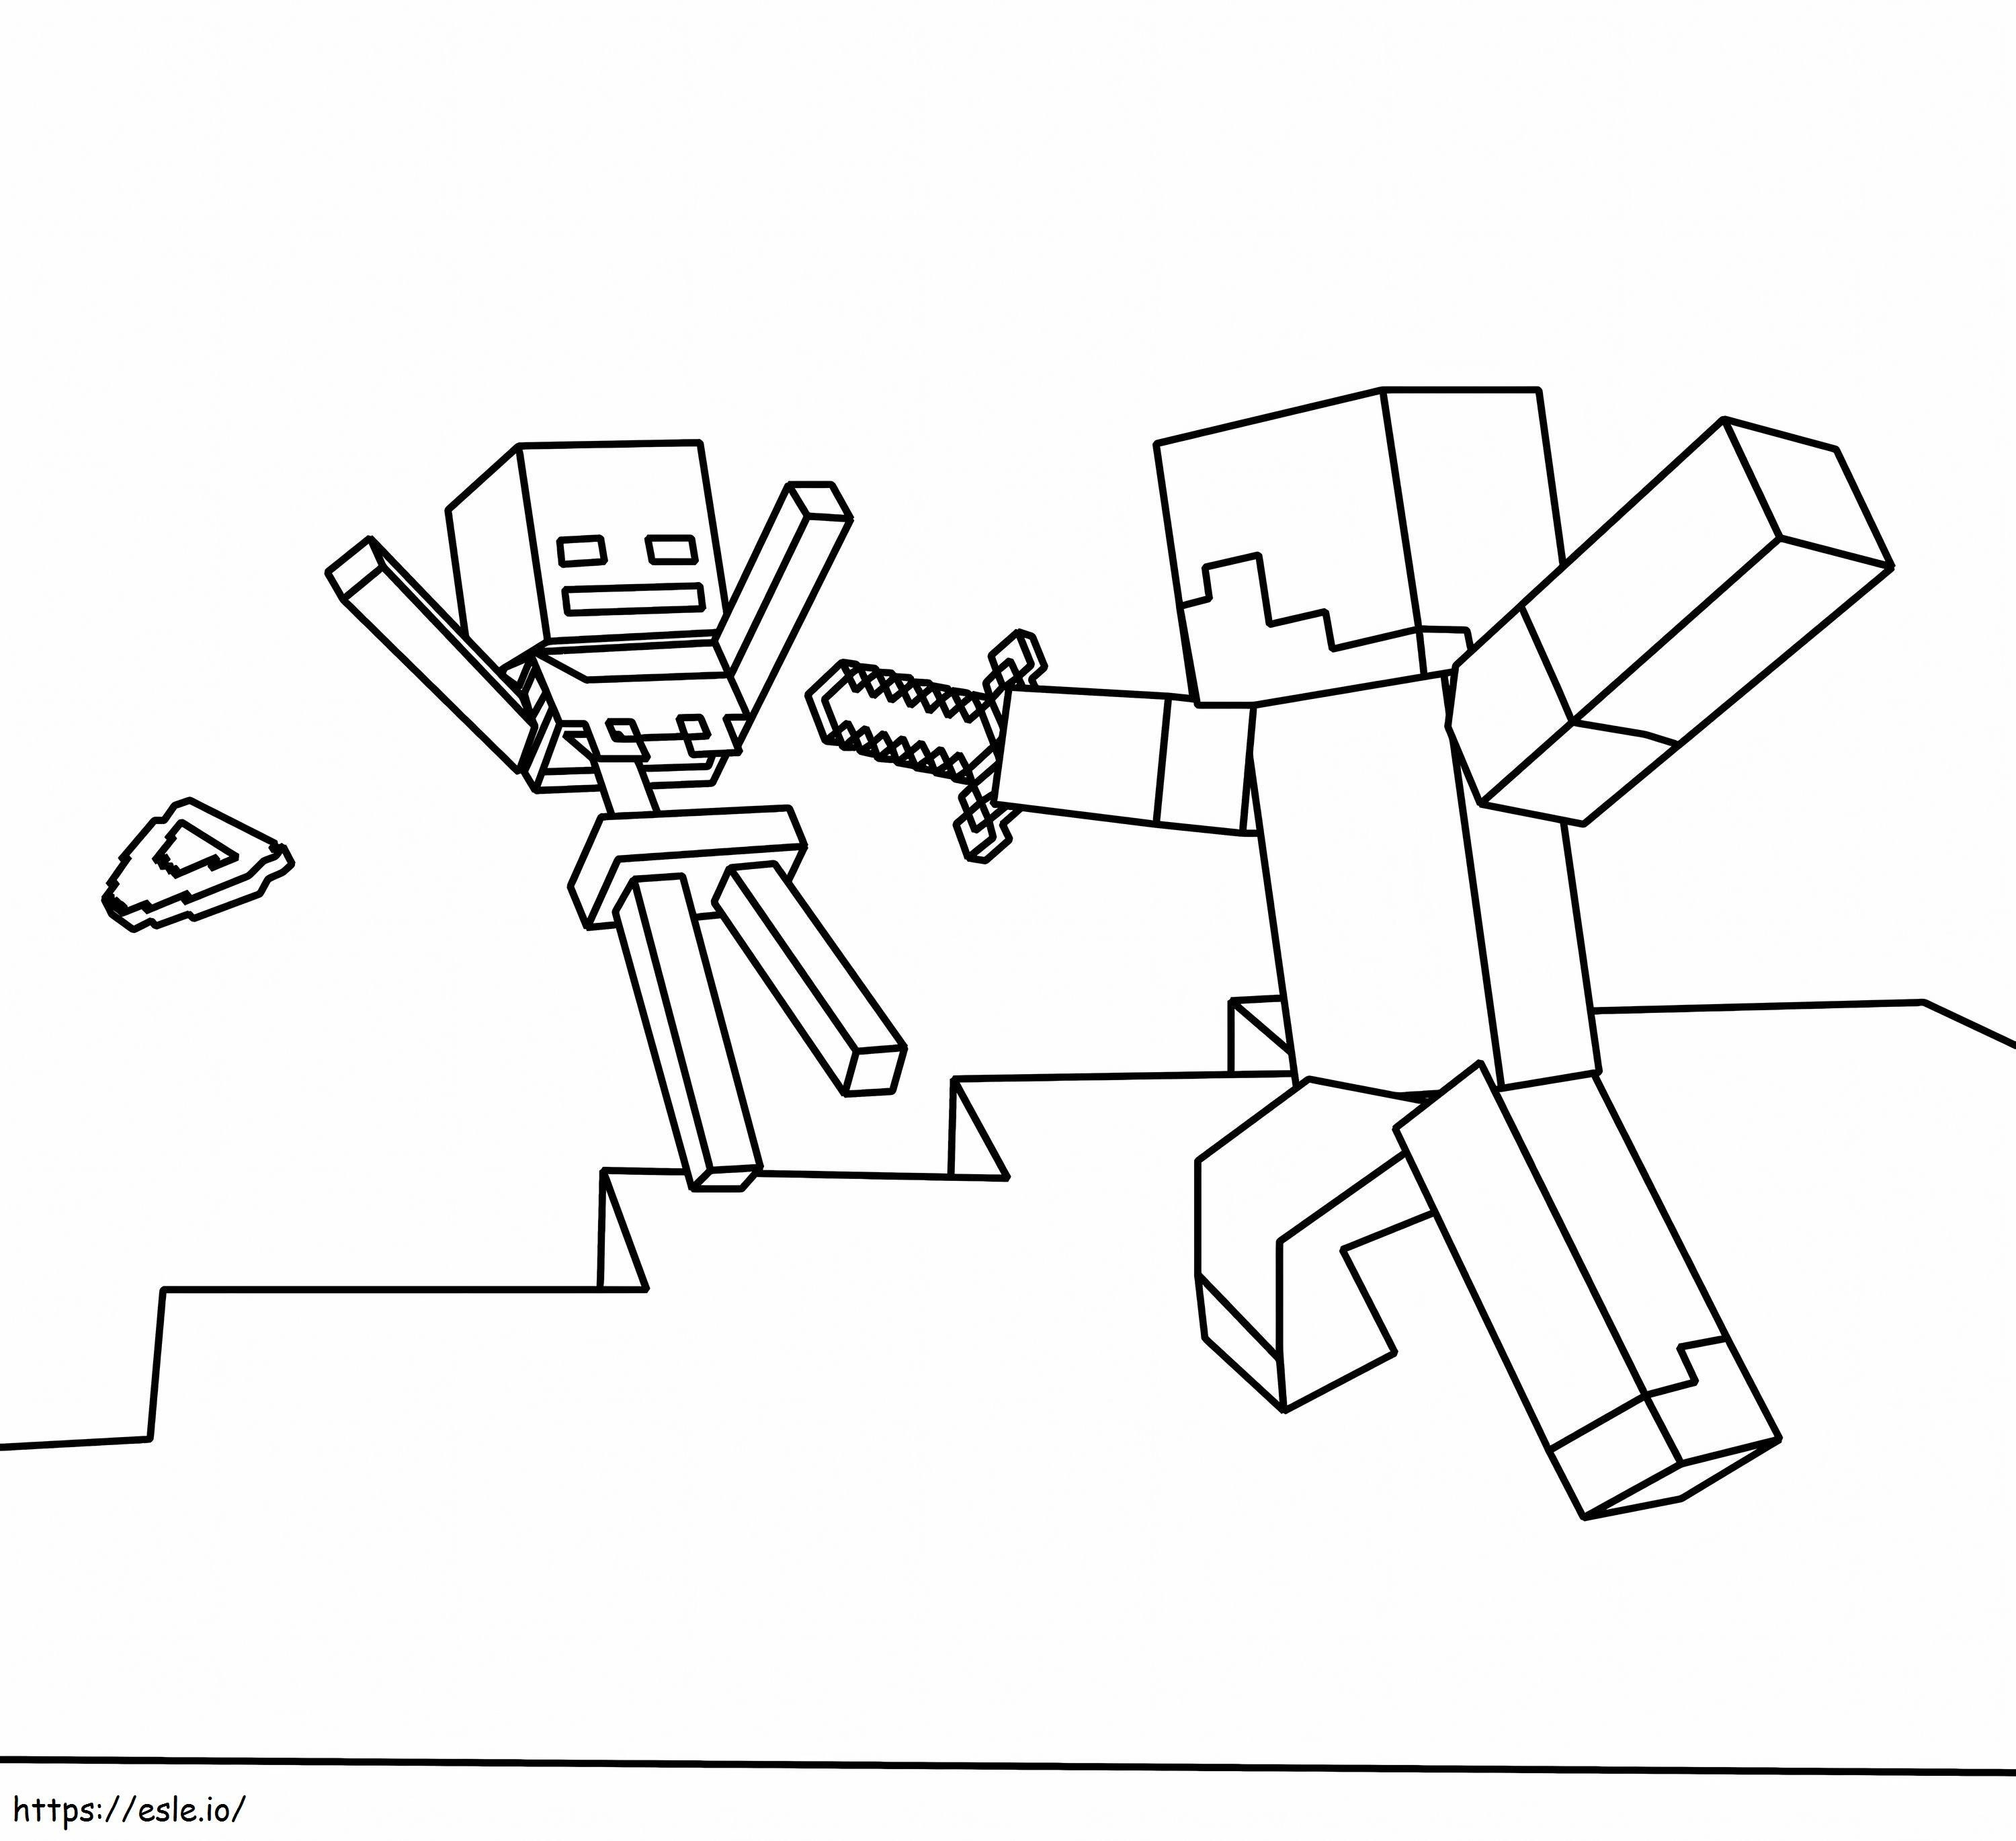  Imagen de Minecraft Steve y el esqueleto dentro para colorear